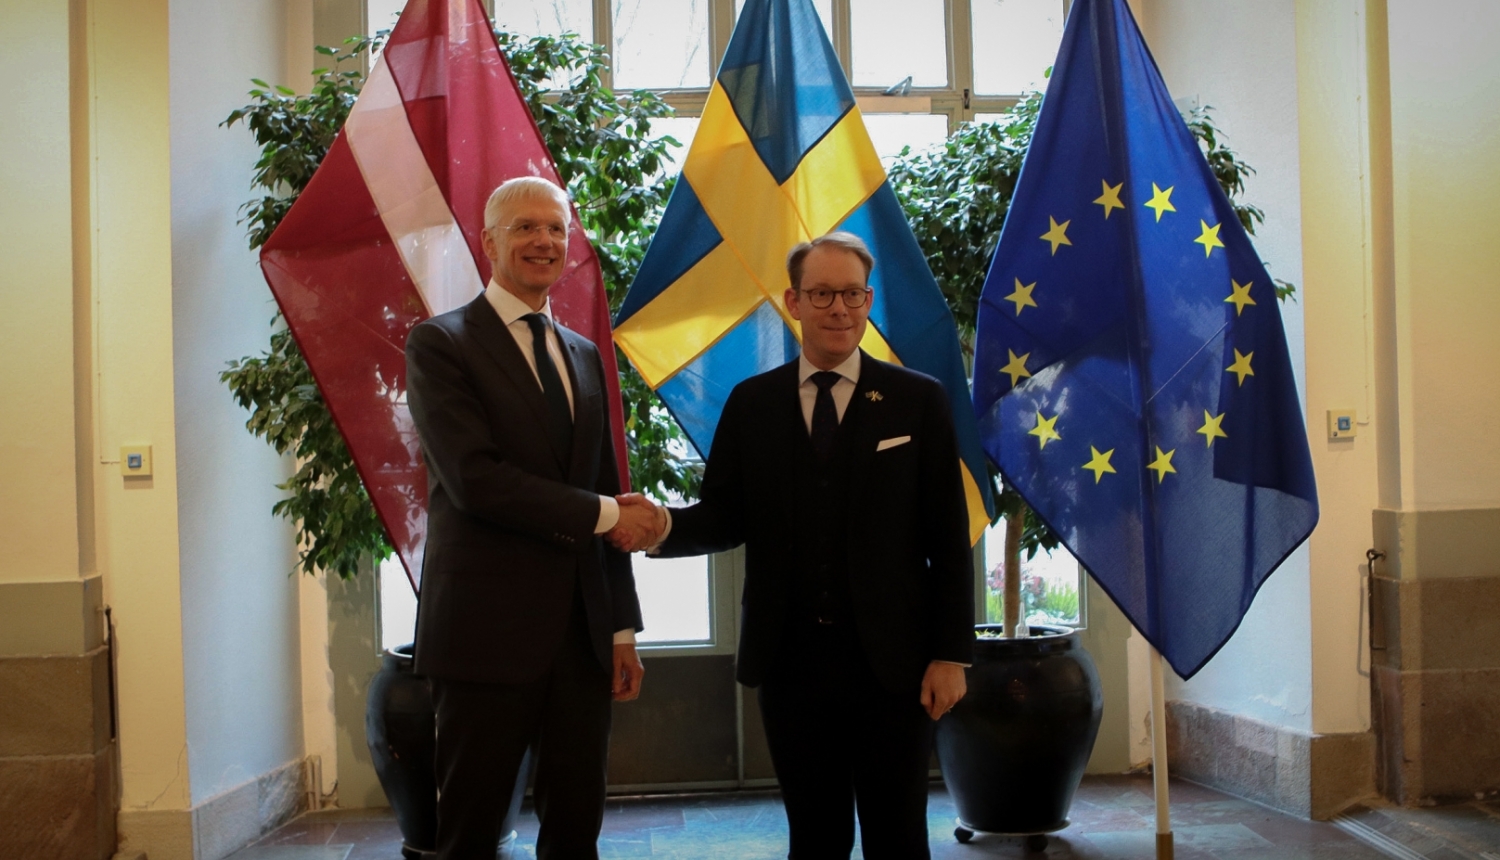 Ārlietu ministrs Krišjānis Kariņš tiekas ar Zviedrijas ārlietu ministru Tobiasu Bilstrēmu (Tobias Billström)